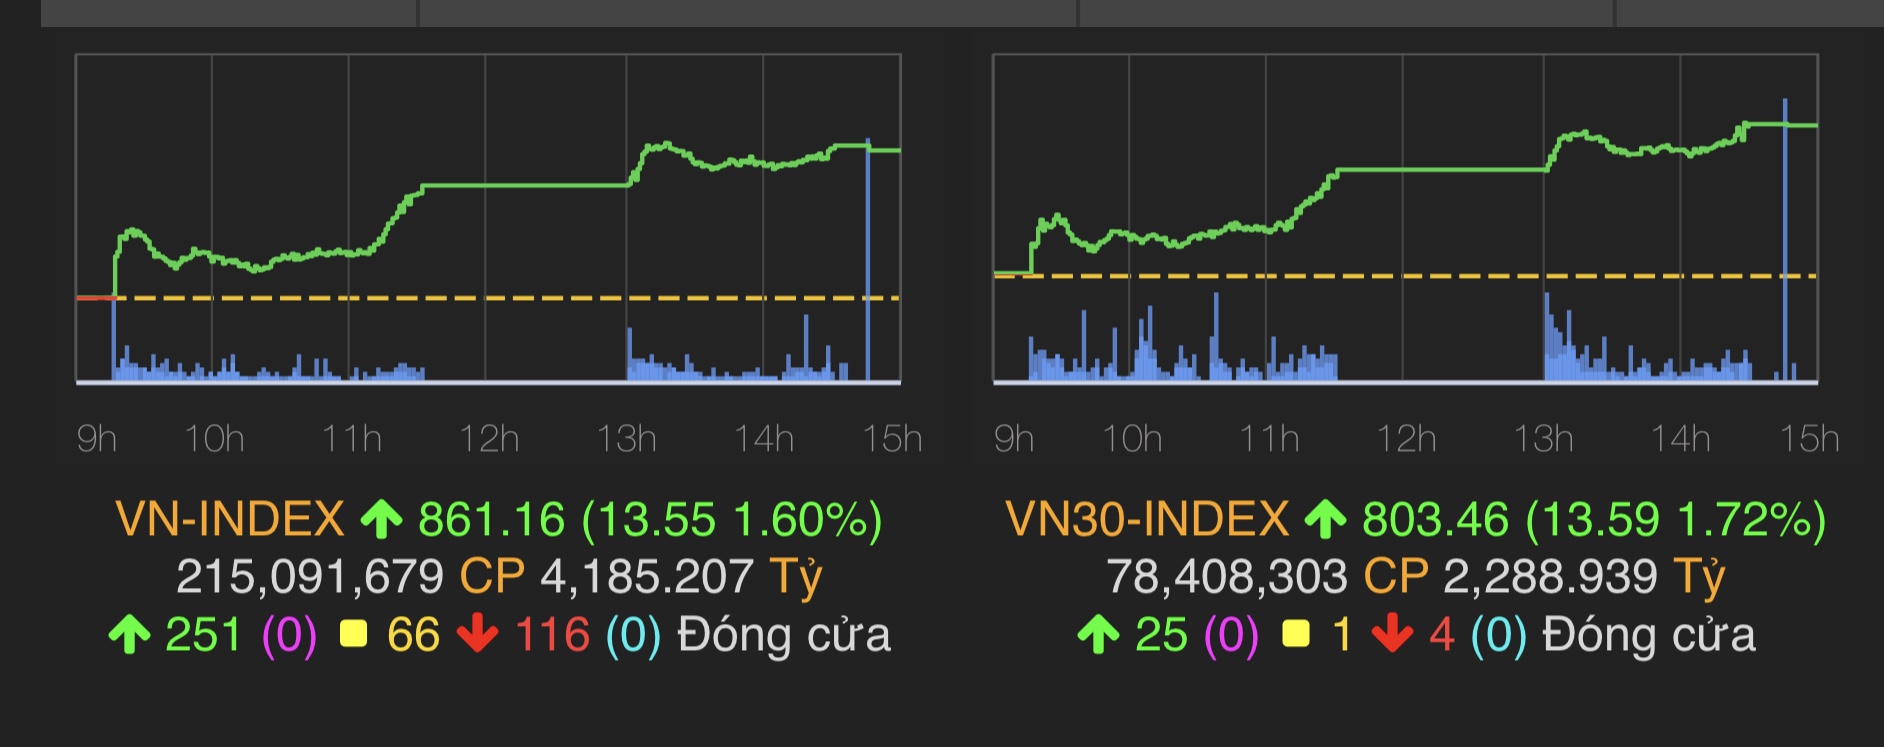 VN-Index tăng 13,55 điểm (1,6%) lên 861,16 điểm.